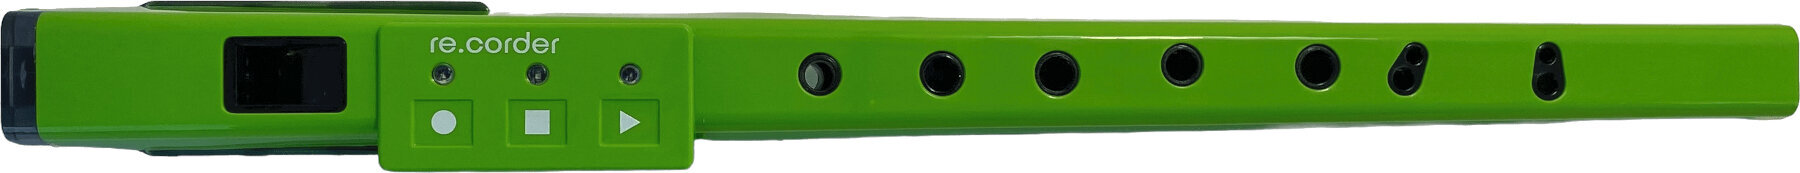 Hybrid-Blasinstrument Artinoise Re.corder Green Hybrid-Blasinstrument